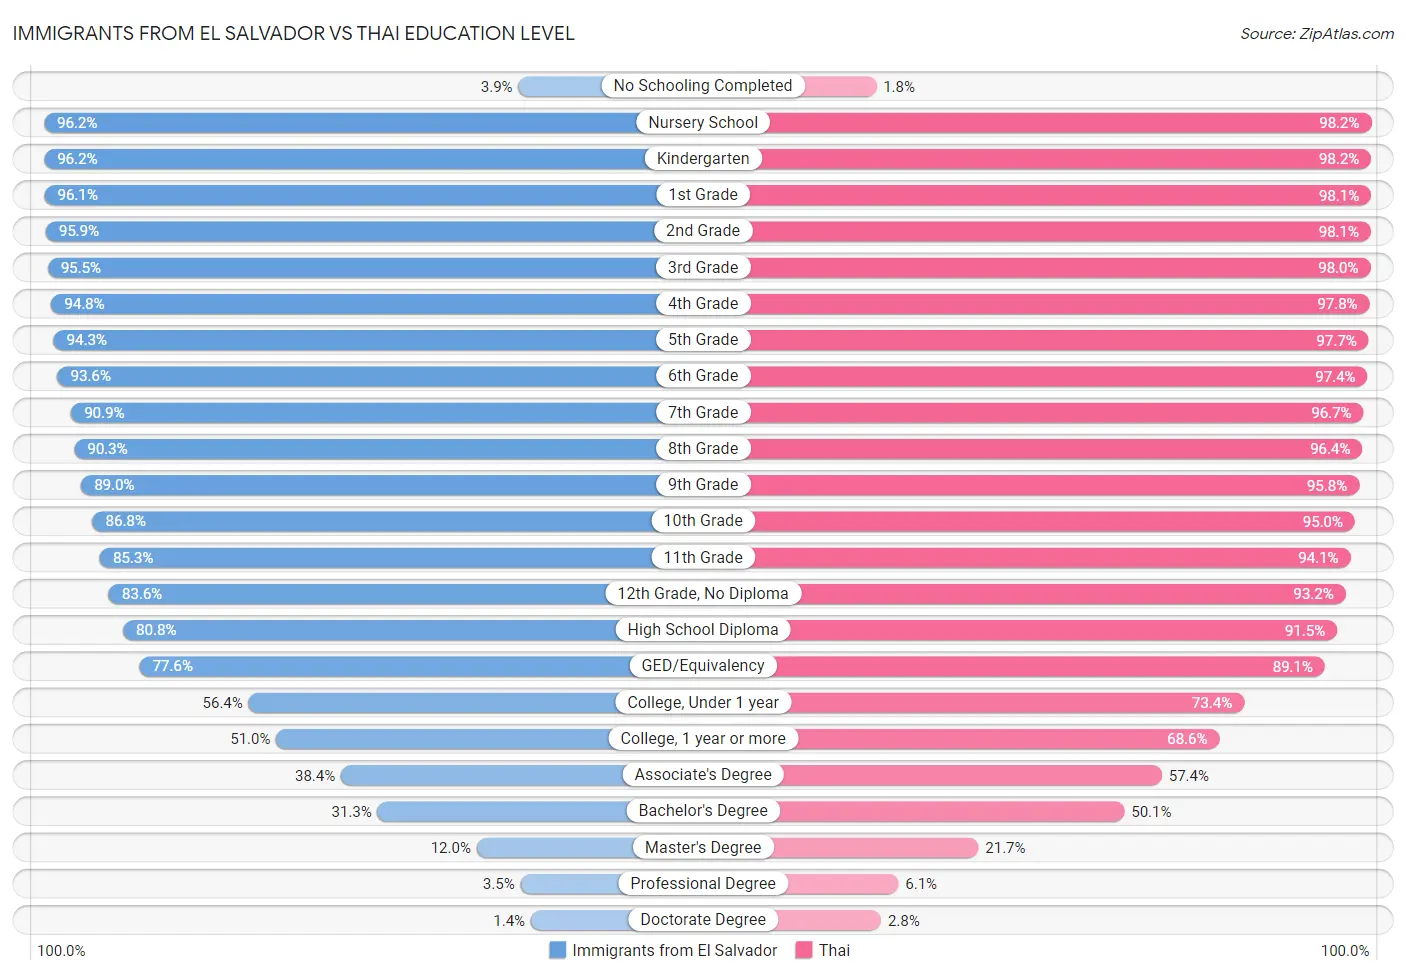 Immigrants from El Salvador vs Thai Education Level